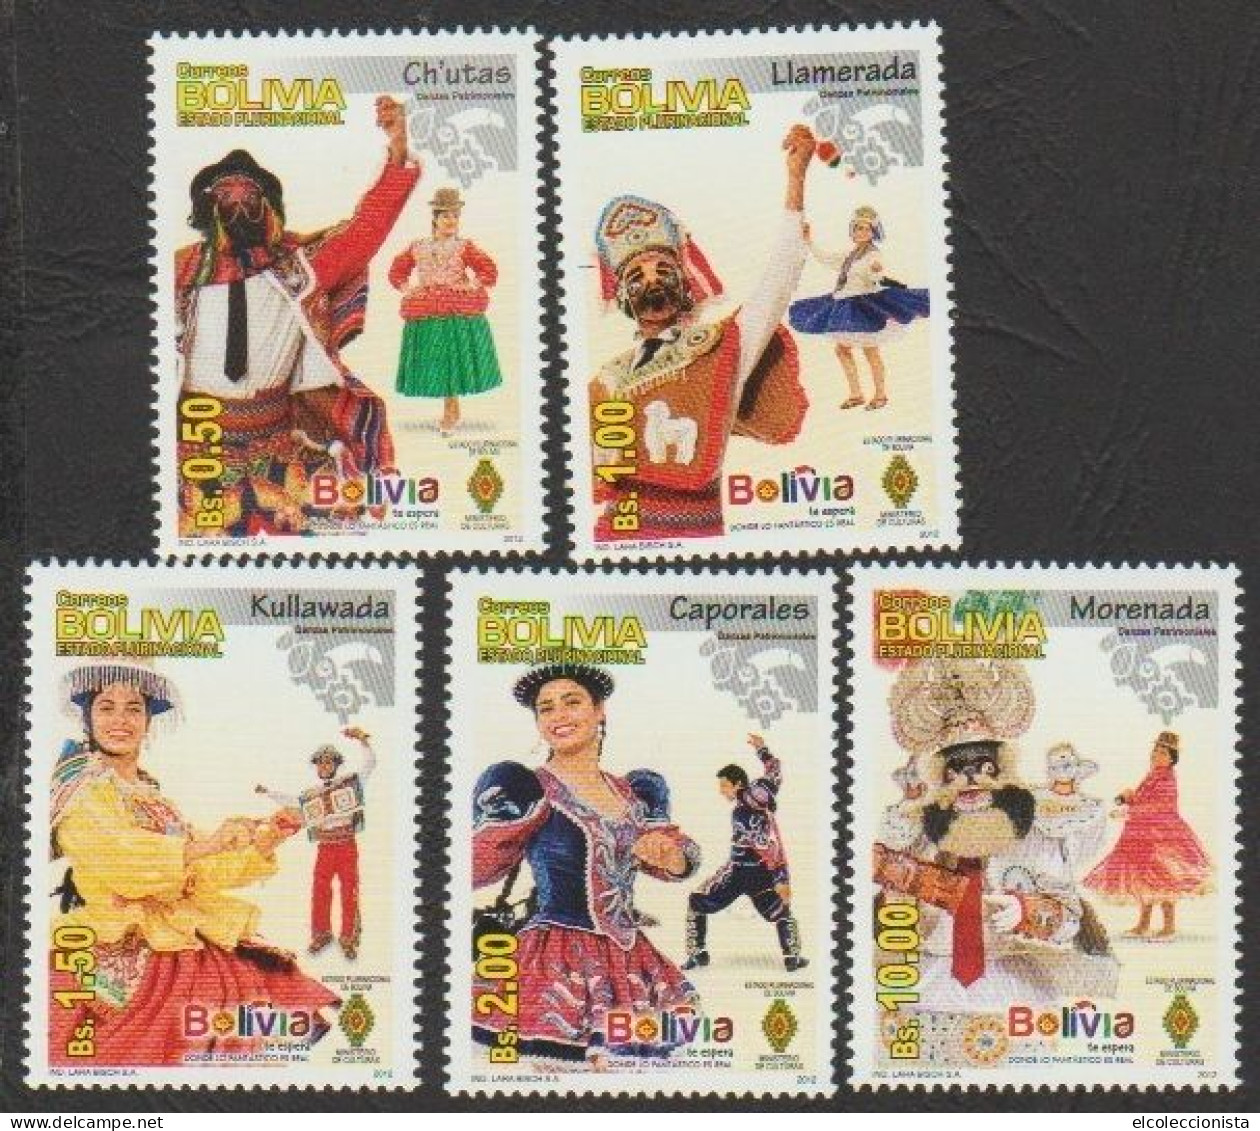 2012 Bolivian Folk Dance Culture MNH Scott 1512 - 1516 - Bolivia